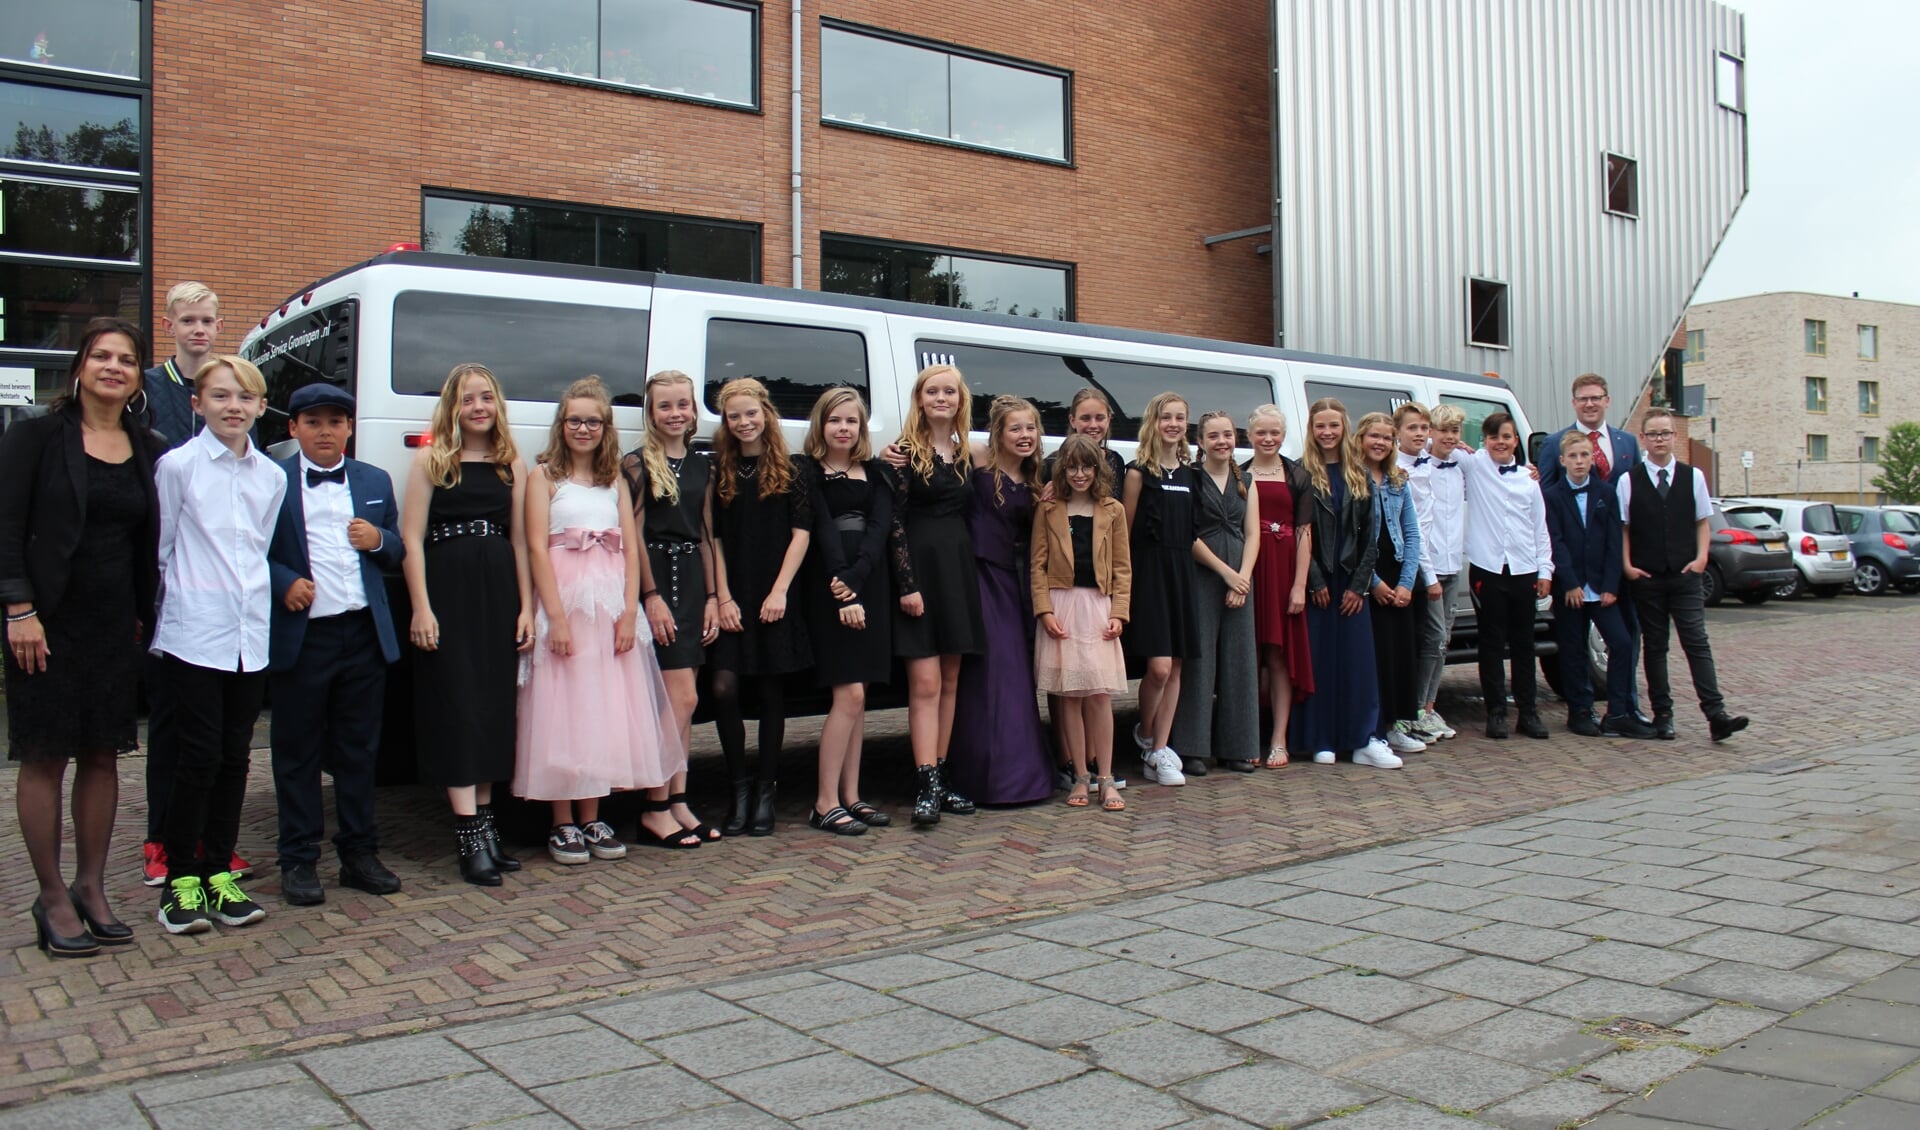 Leerlingen van IKC Harm Smeenge in gala bij de limousine (foto IKC Harm Smeenge).